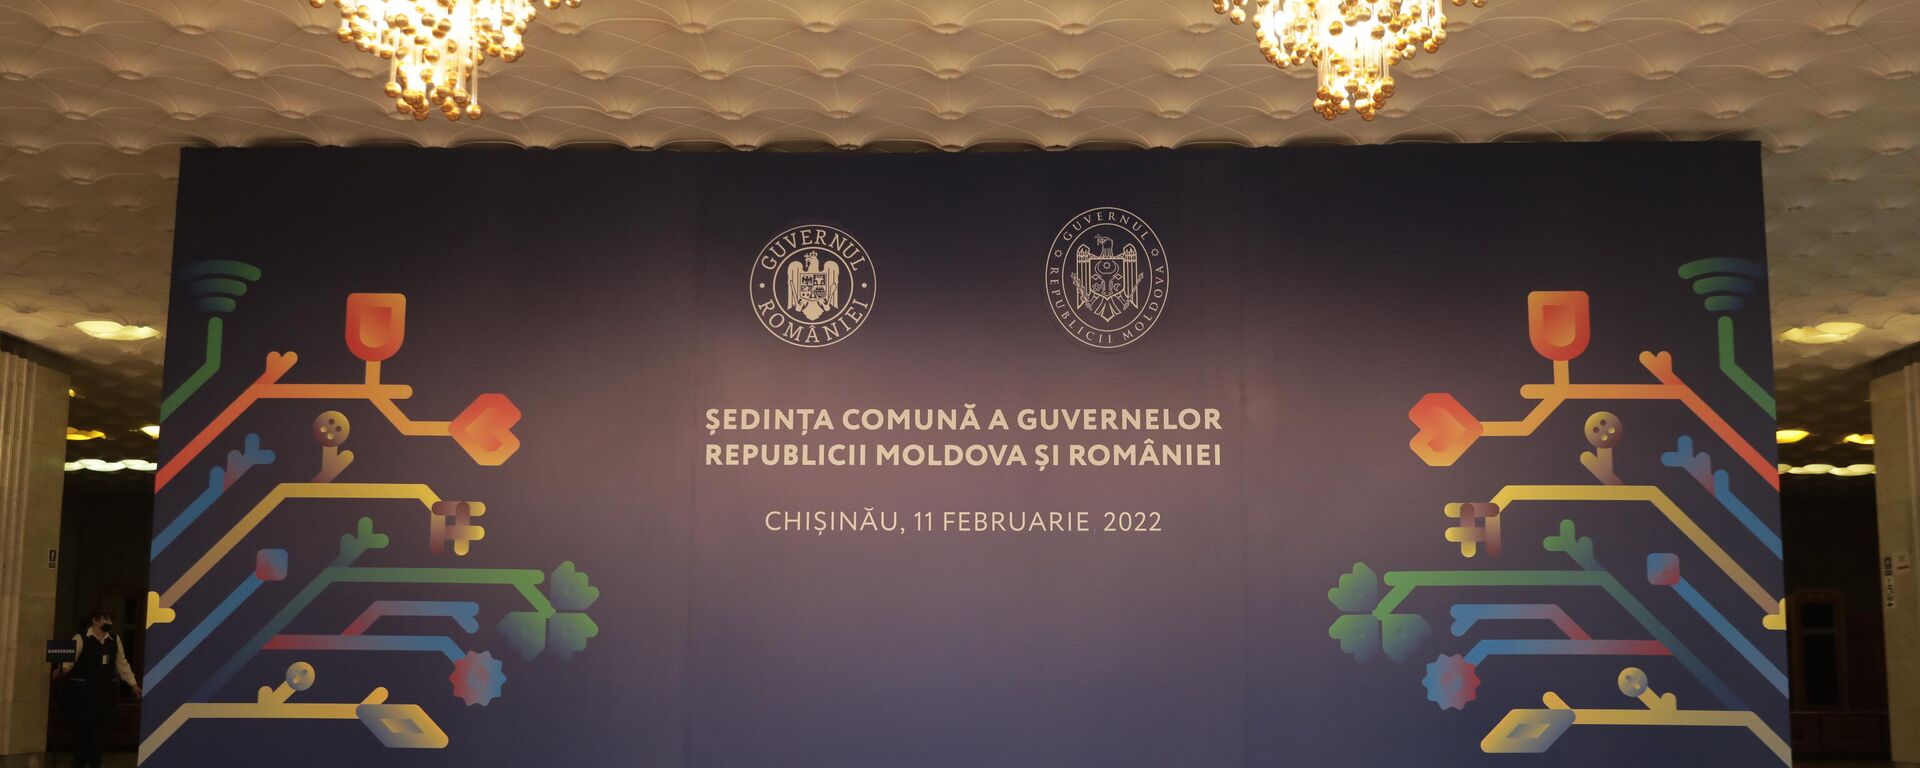 Ședința comună a guvernelor Republicii Moldova și României - Sputnik Moldova, 1920, 11.02.2022